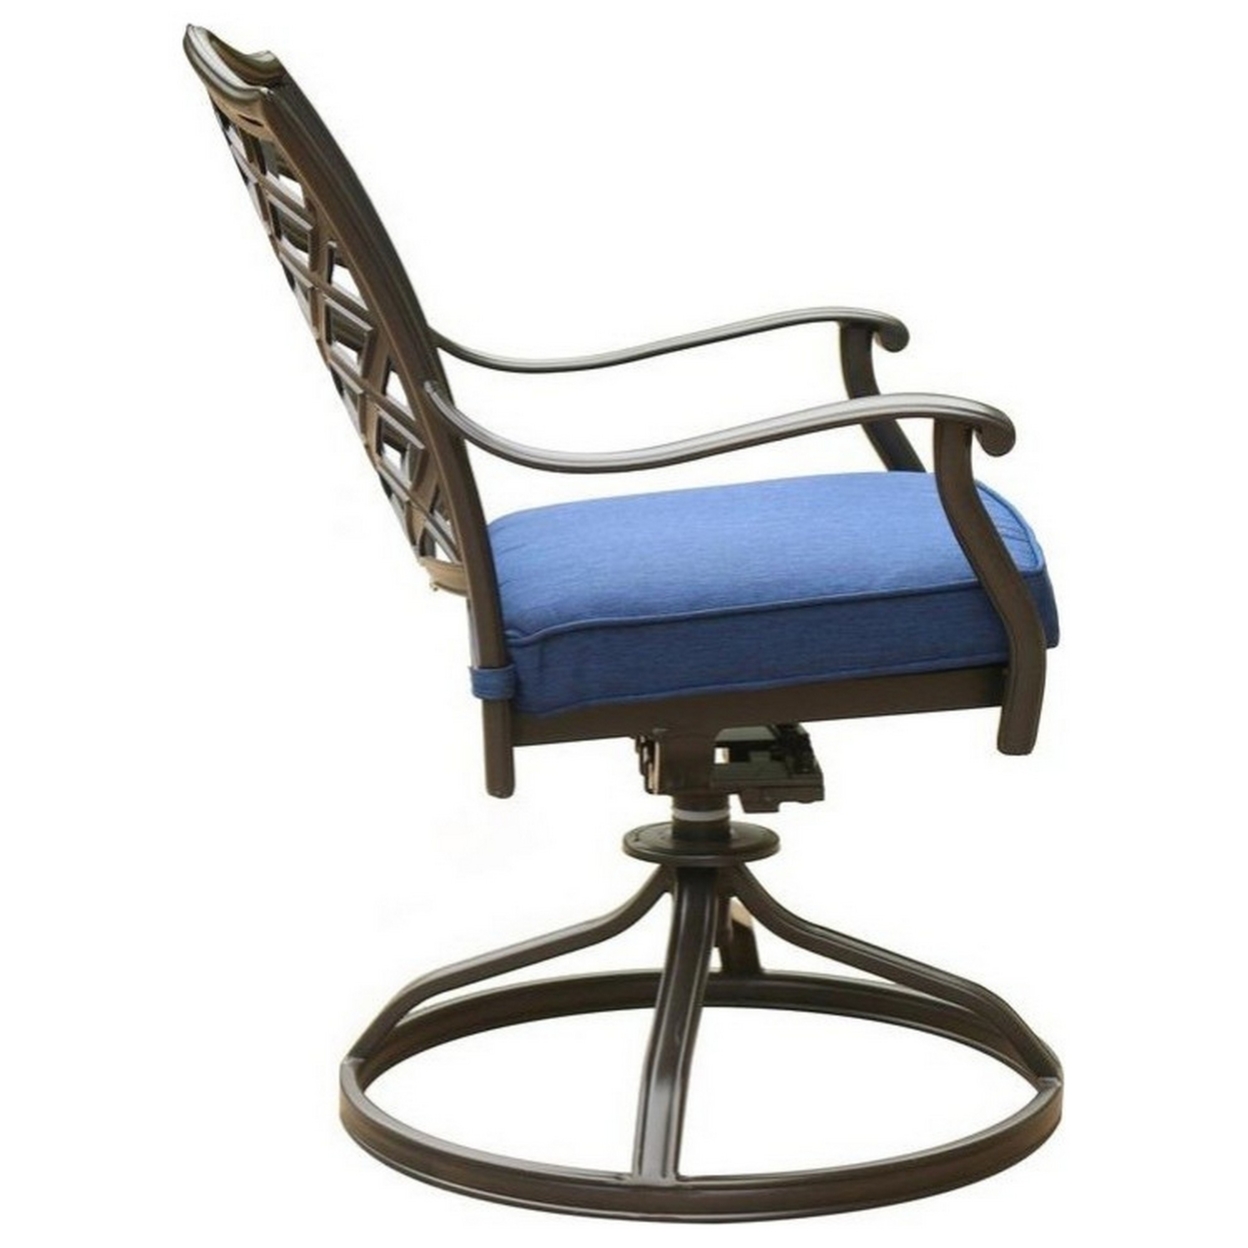 Wynn 25 Inch Modern Patio Dining Swivel Chair With Cushion, Set Of 2, Blue- Saltoro Sherpi